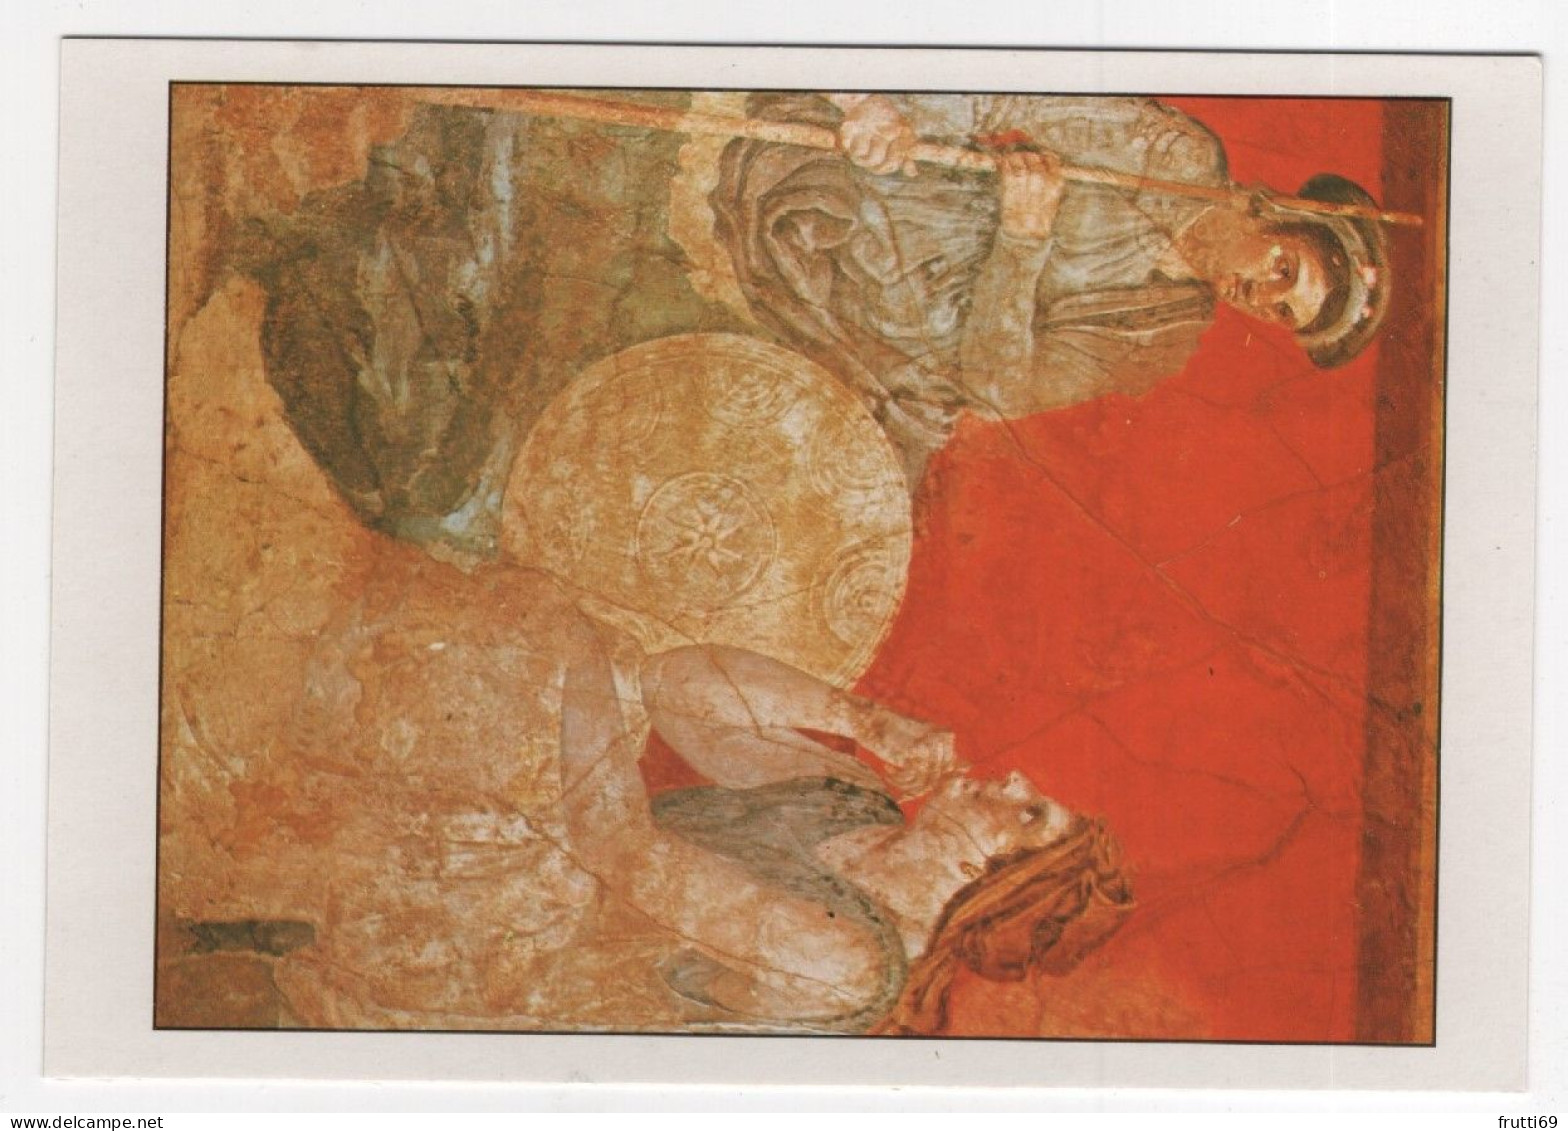 AK 210241 ART / PAINTING ... - Römische Kunst - Erste Augustinische Epoche, Pompej - Anonym - Historische Szene - Ancient World